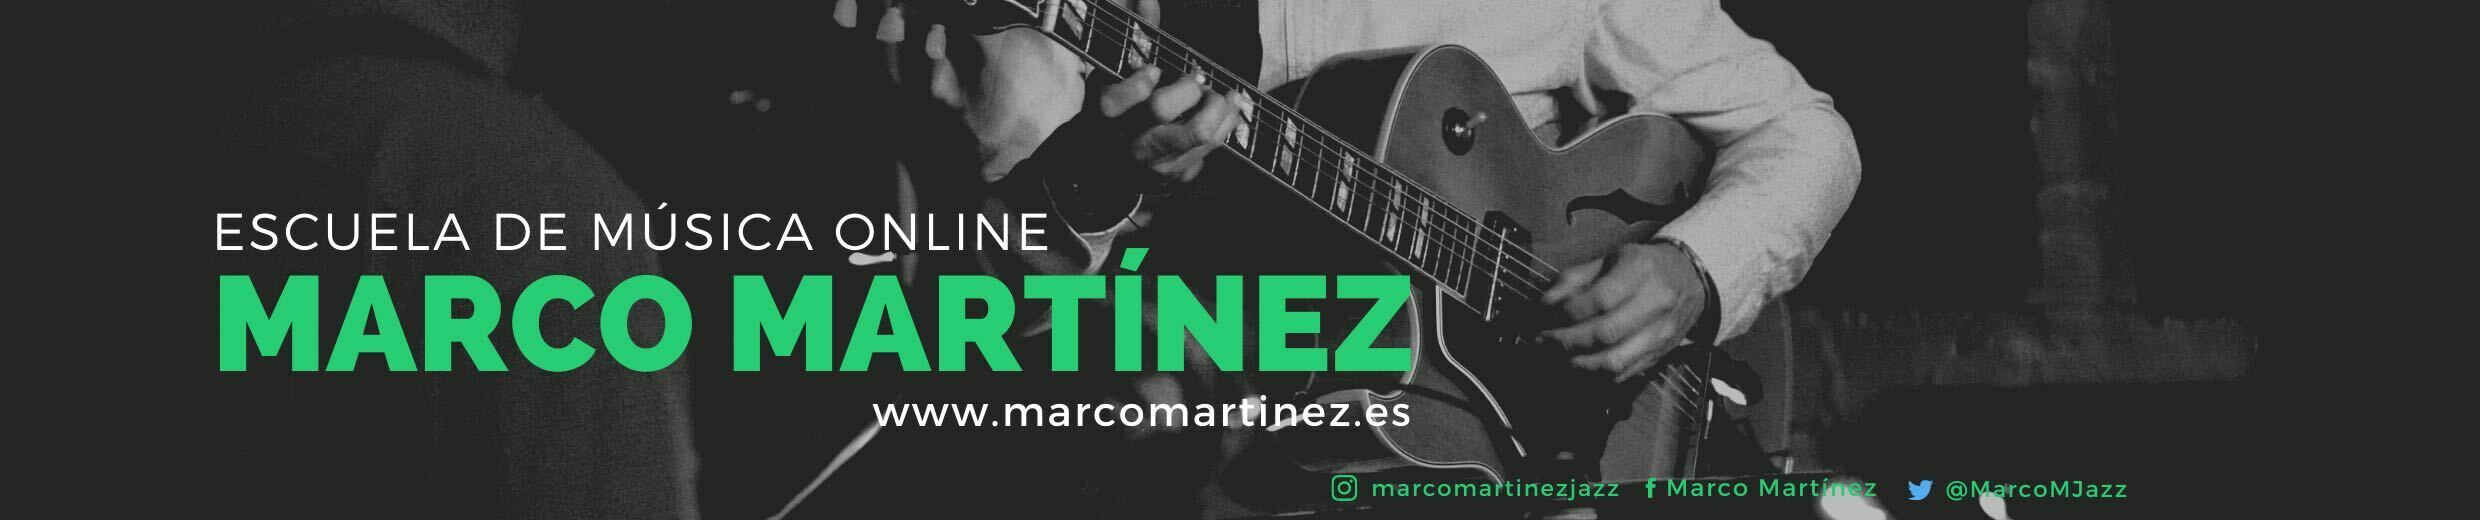 Escuela-de-Musica-Online.-Marco-Martinez3